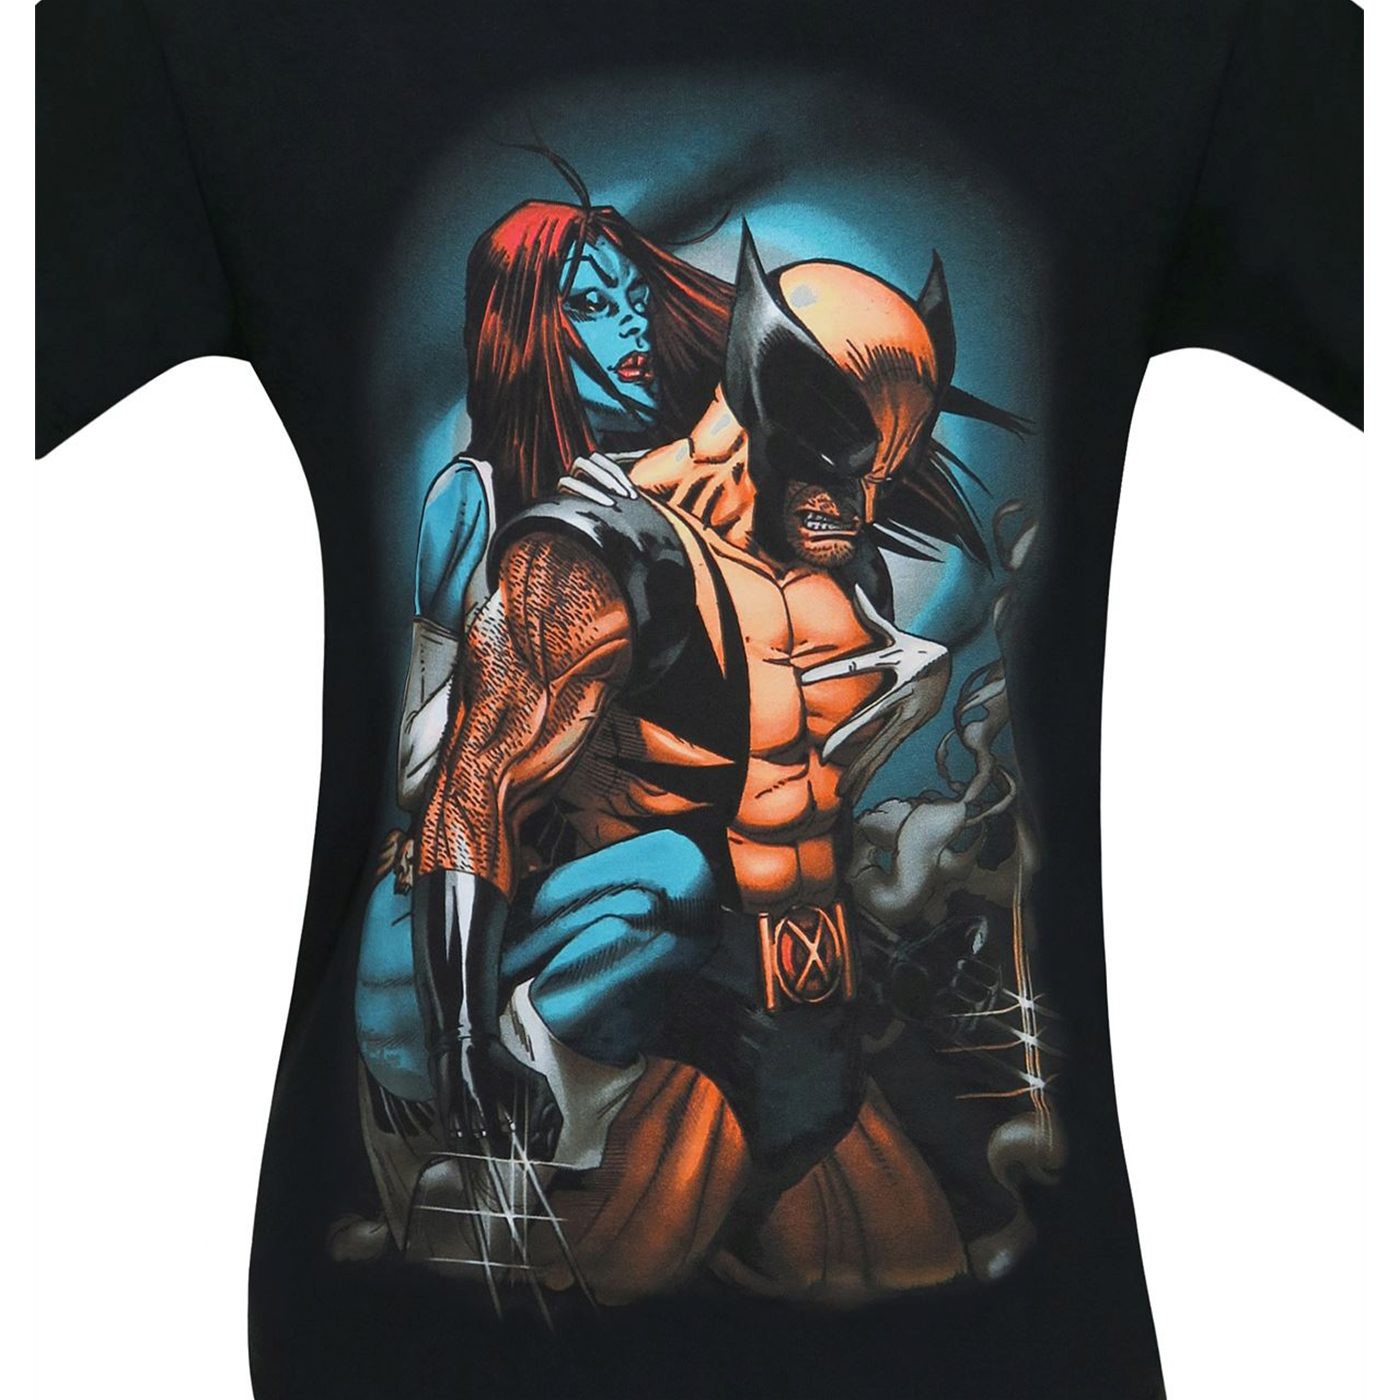 Wolverine and Mystique Men's T-Shirt